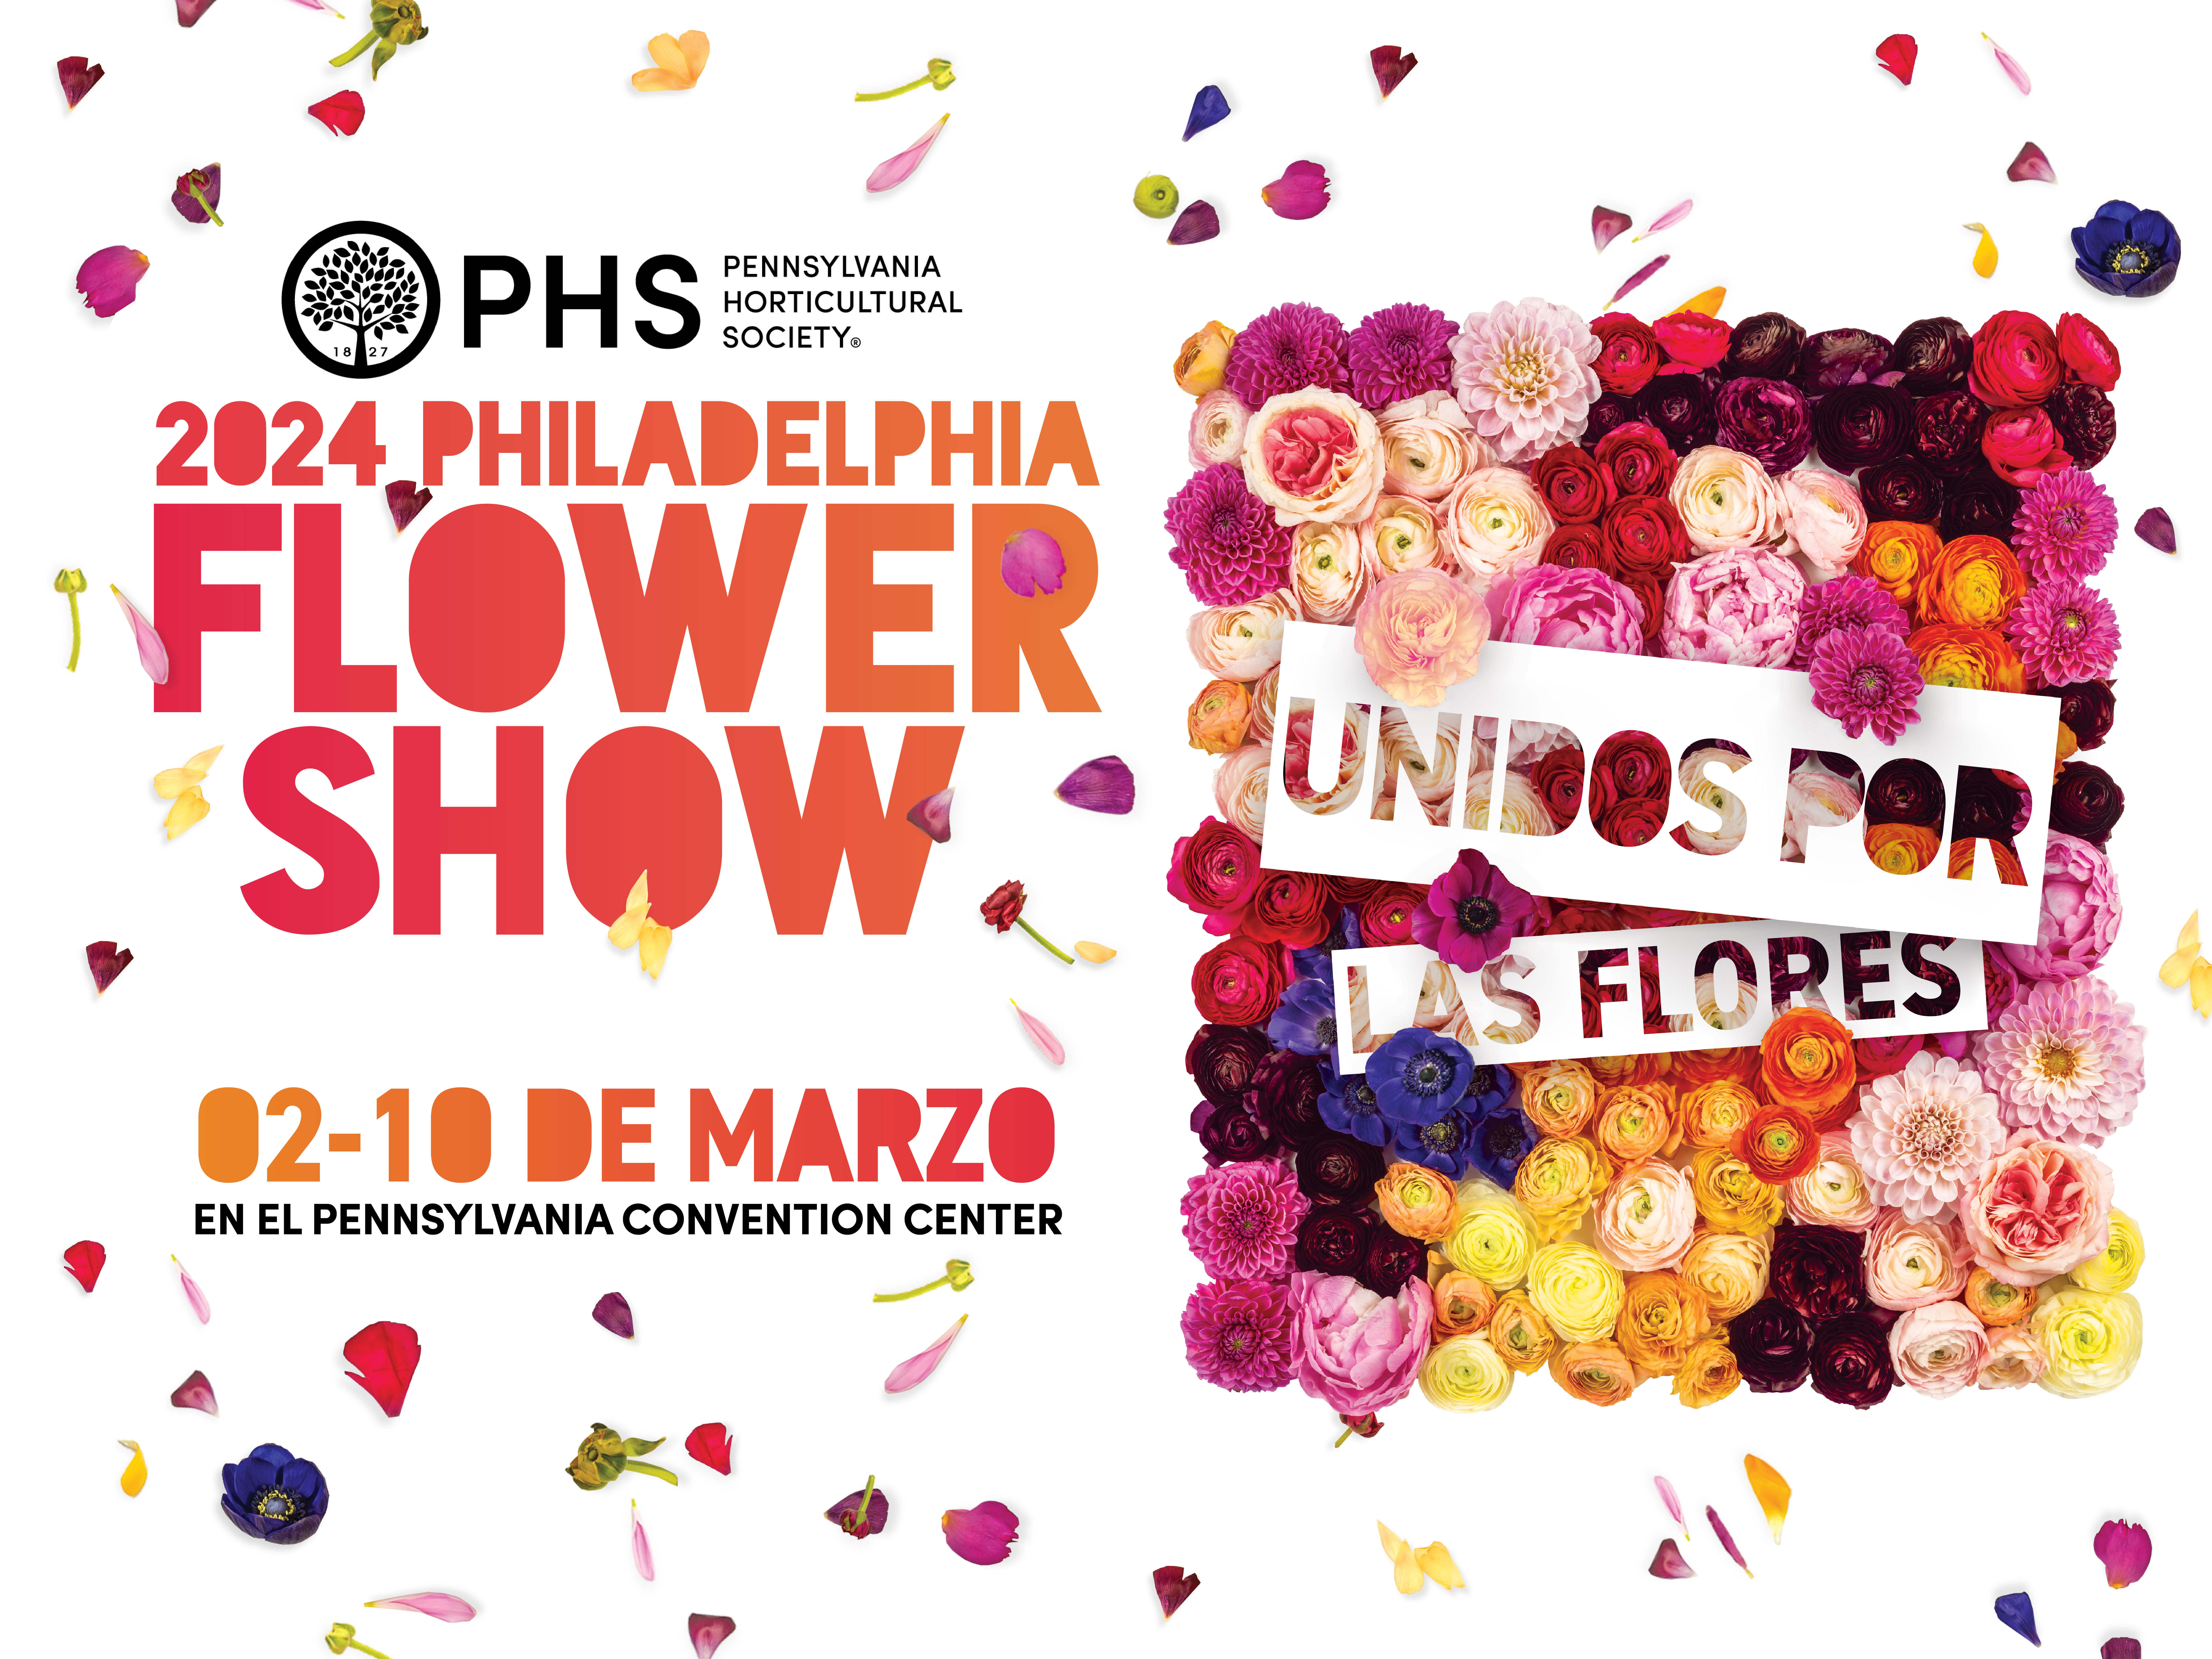 Pennsylvania Horticultural Society, Promoción 2024 Philadelphia Flower Show, Promoción Unidos por las Flores, 02-10 de marzo